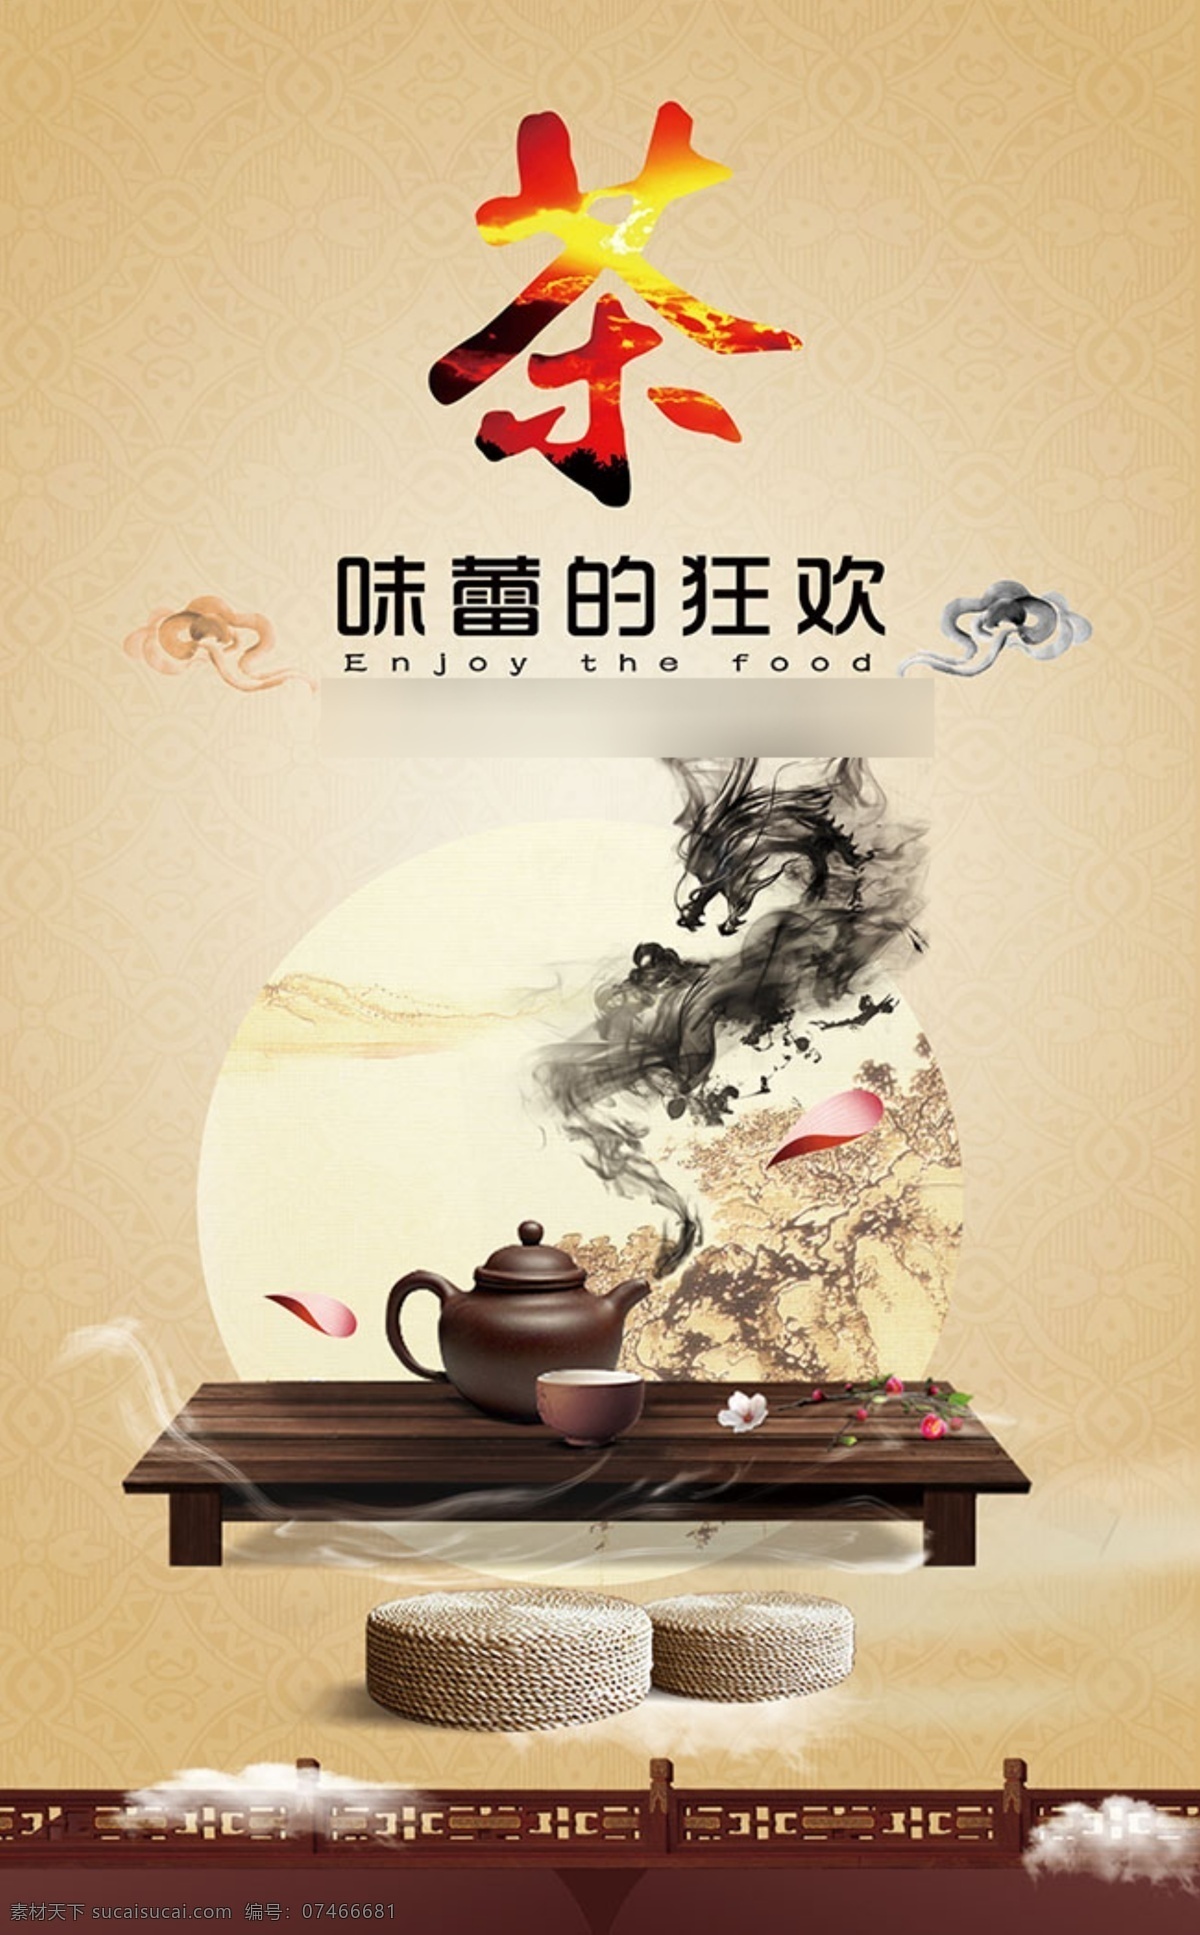 味蕾 狂欢 茶 美食 海报 茶具 水墨 龙 坐垫 中国 风 创意 美食海报设计 特色美食 美食节海报 美食漫画 舌尖上的中国 中国风海报 黄色